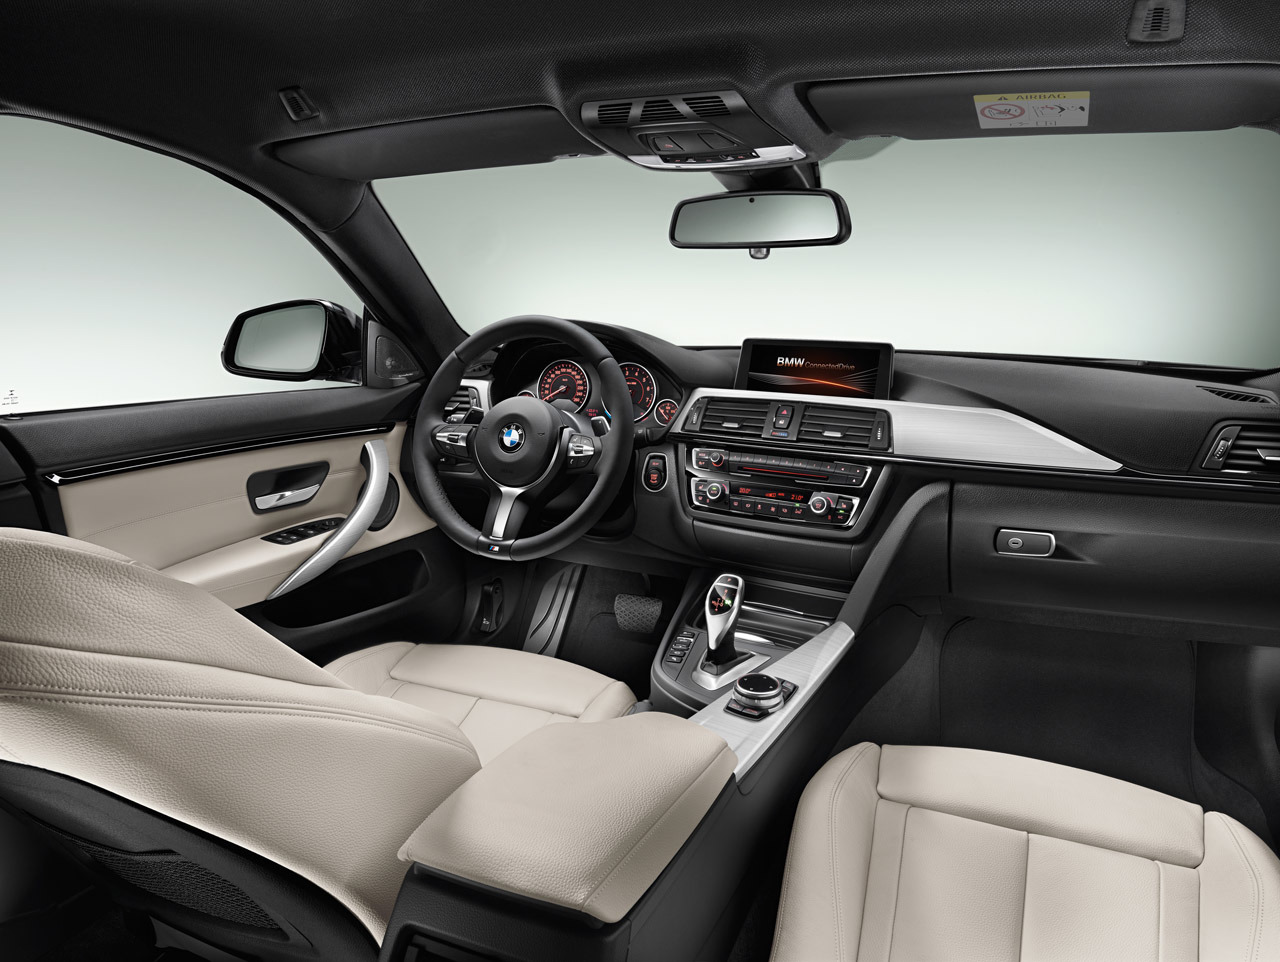 BMW Serie 4 Grand Coupé interior